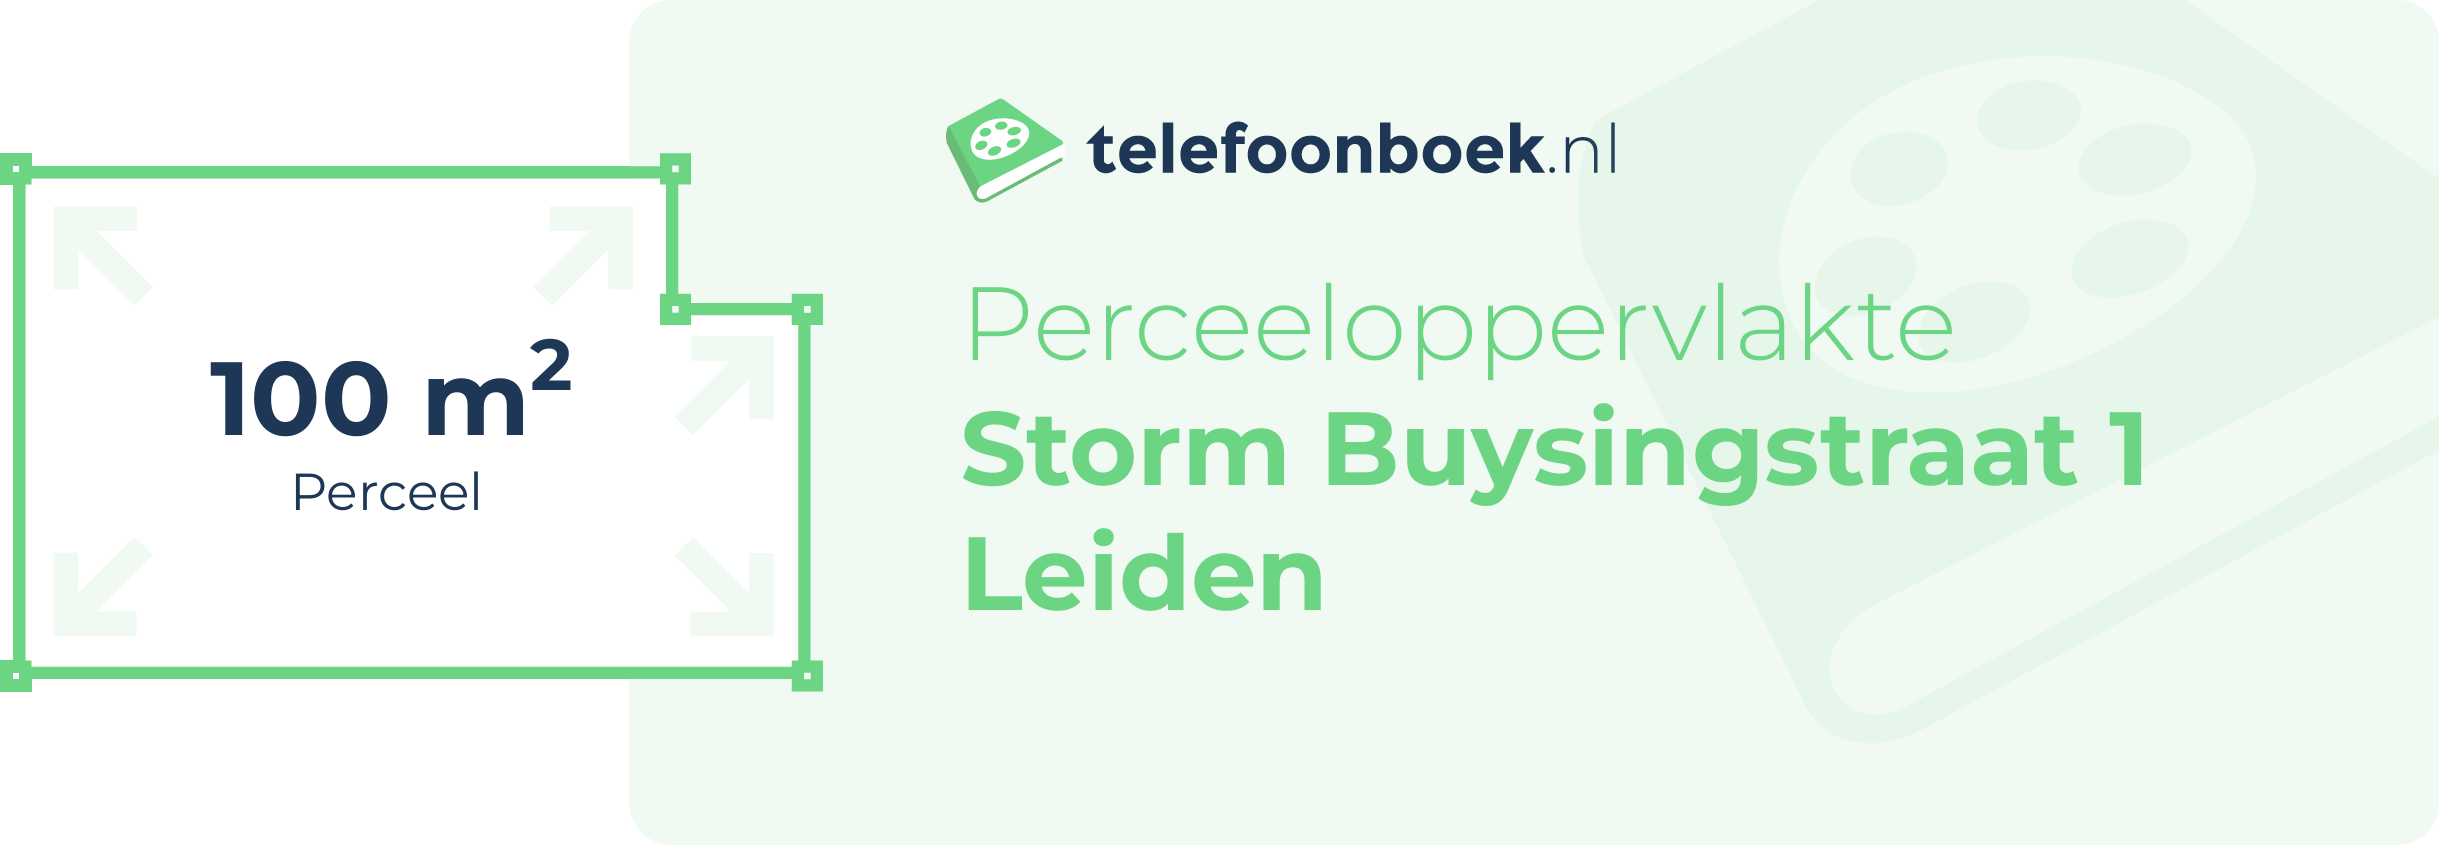 Perceeloppervlakte Storm Buysingstraat 1 Leiden